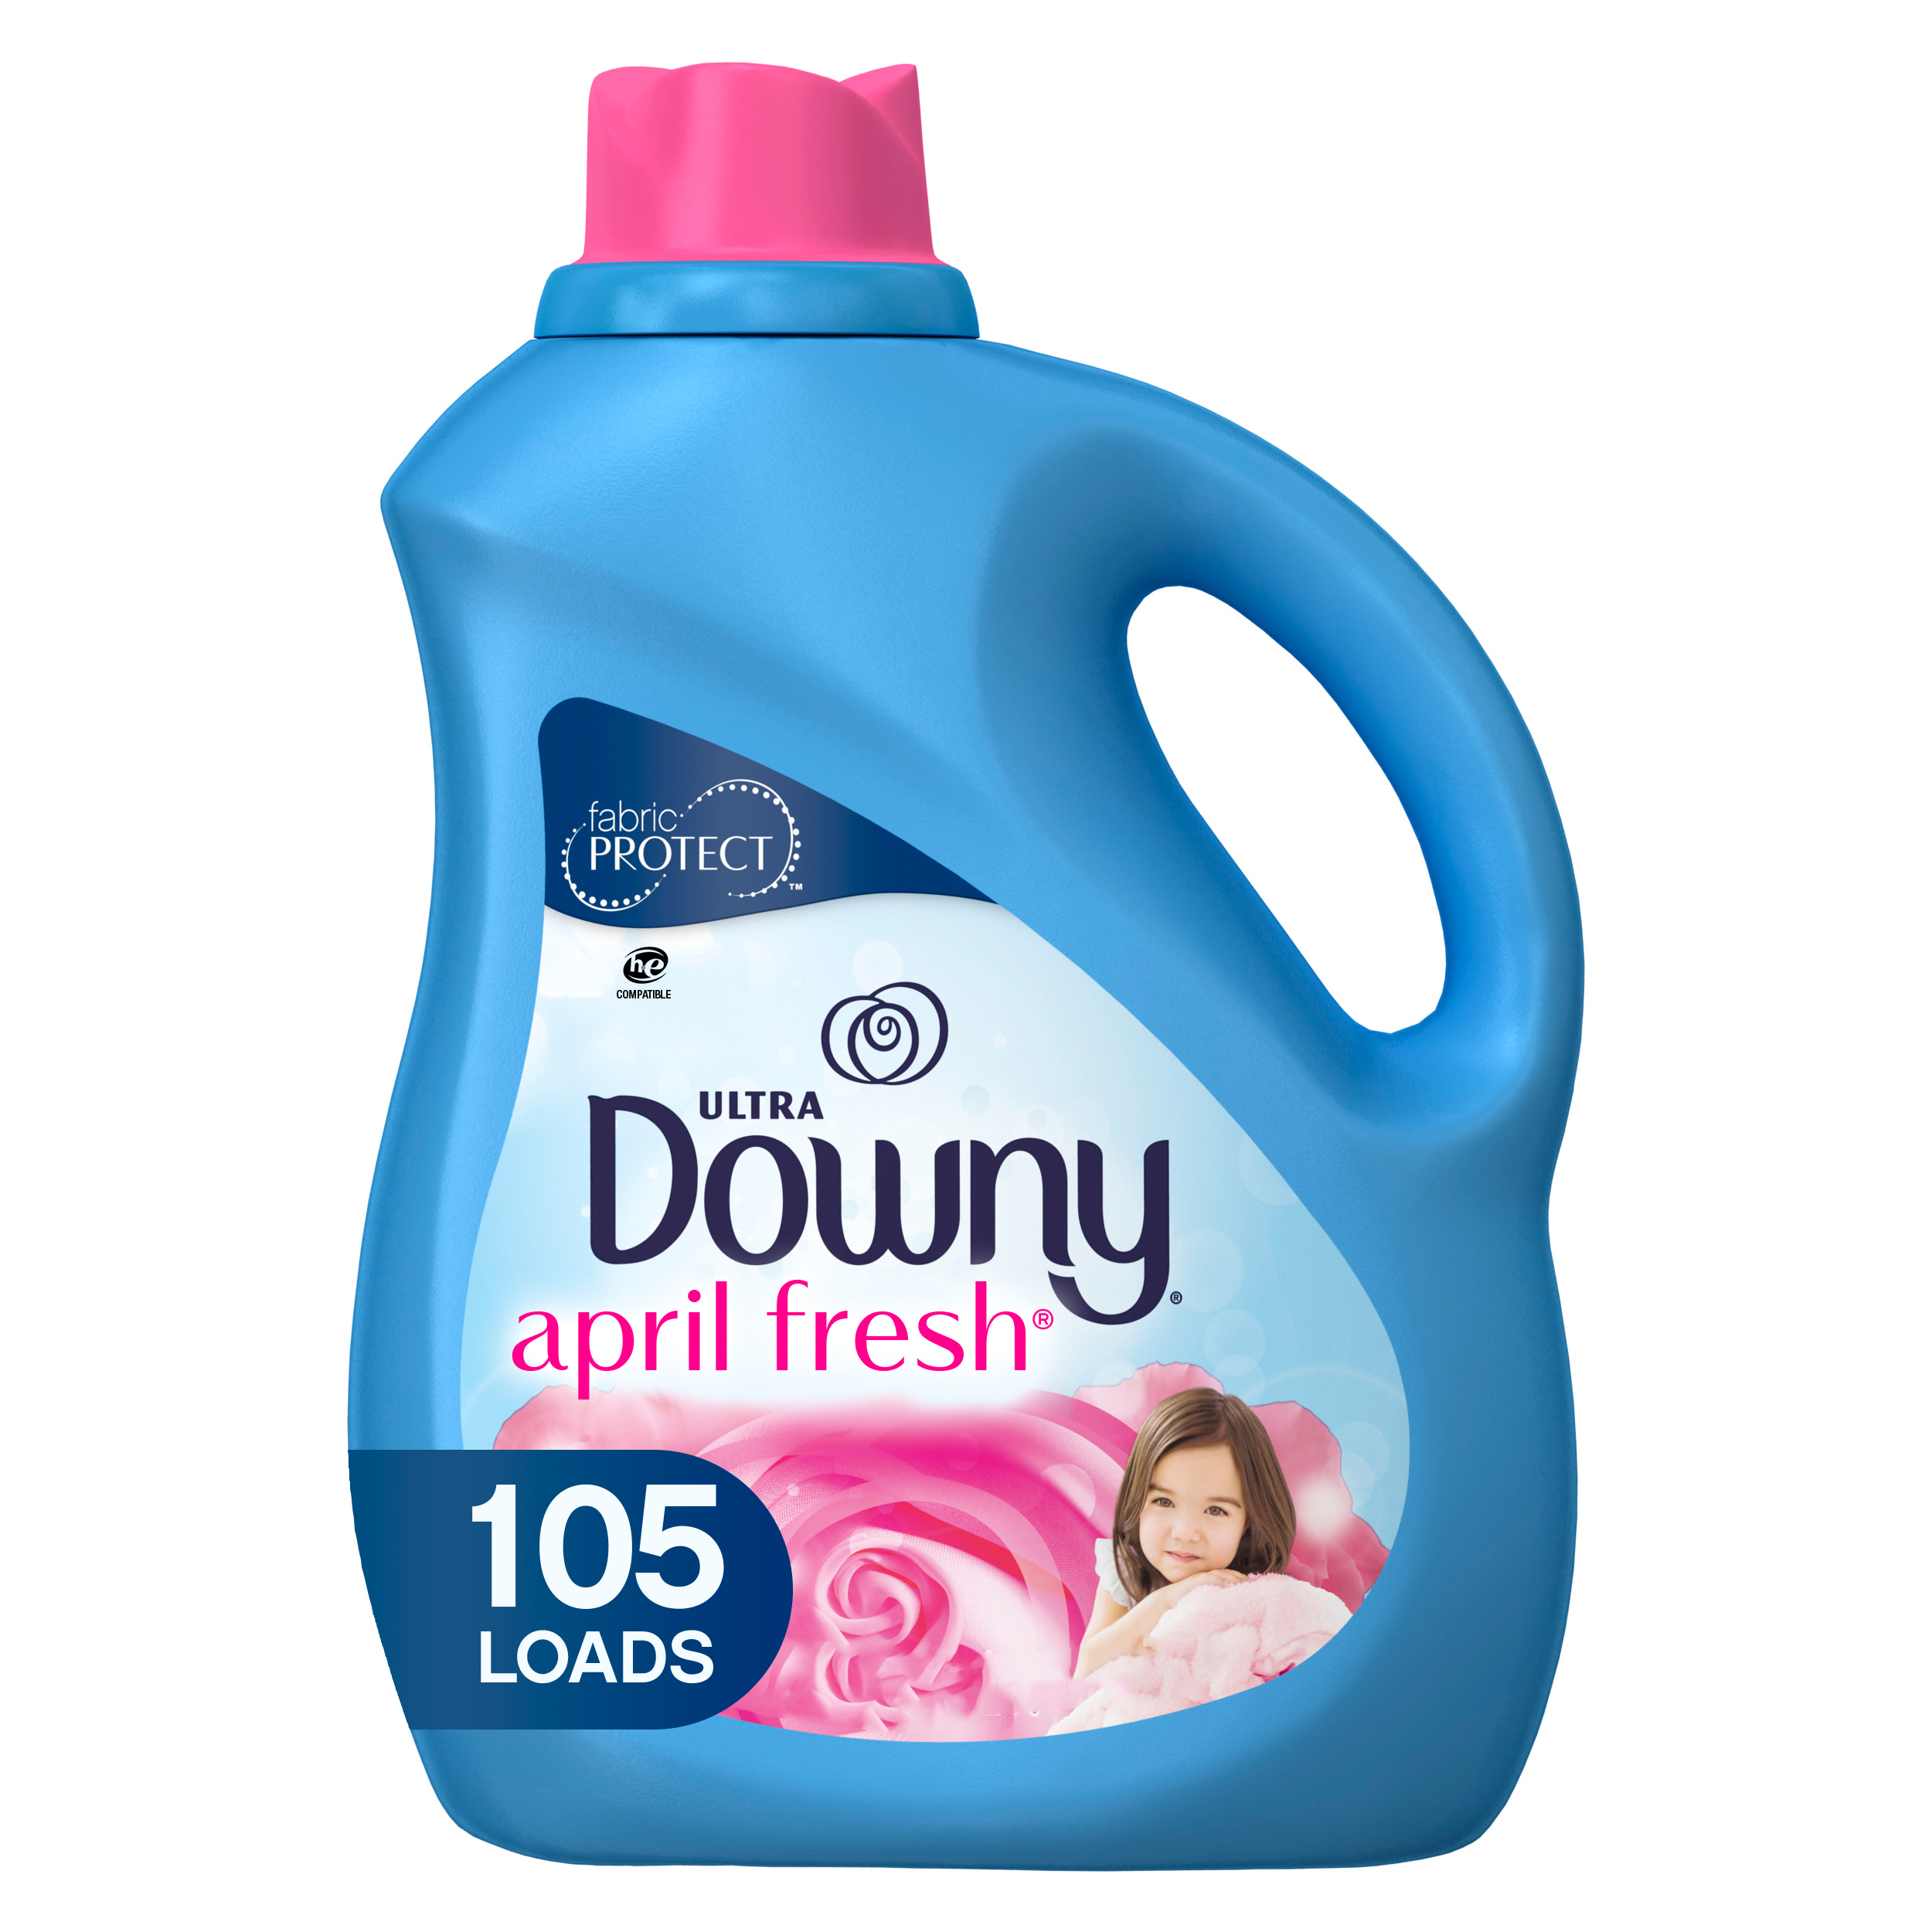 Downy April Fresh, 105 Loads Liquid Fabric Softener, 90 fl oz - image 1 of 8